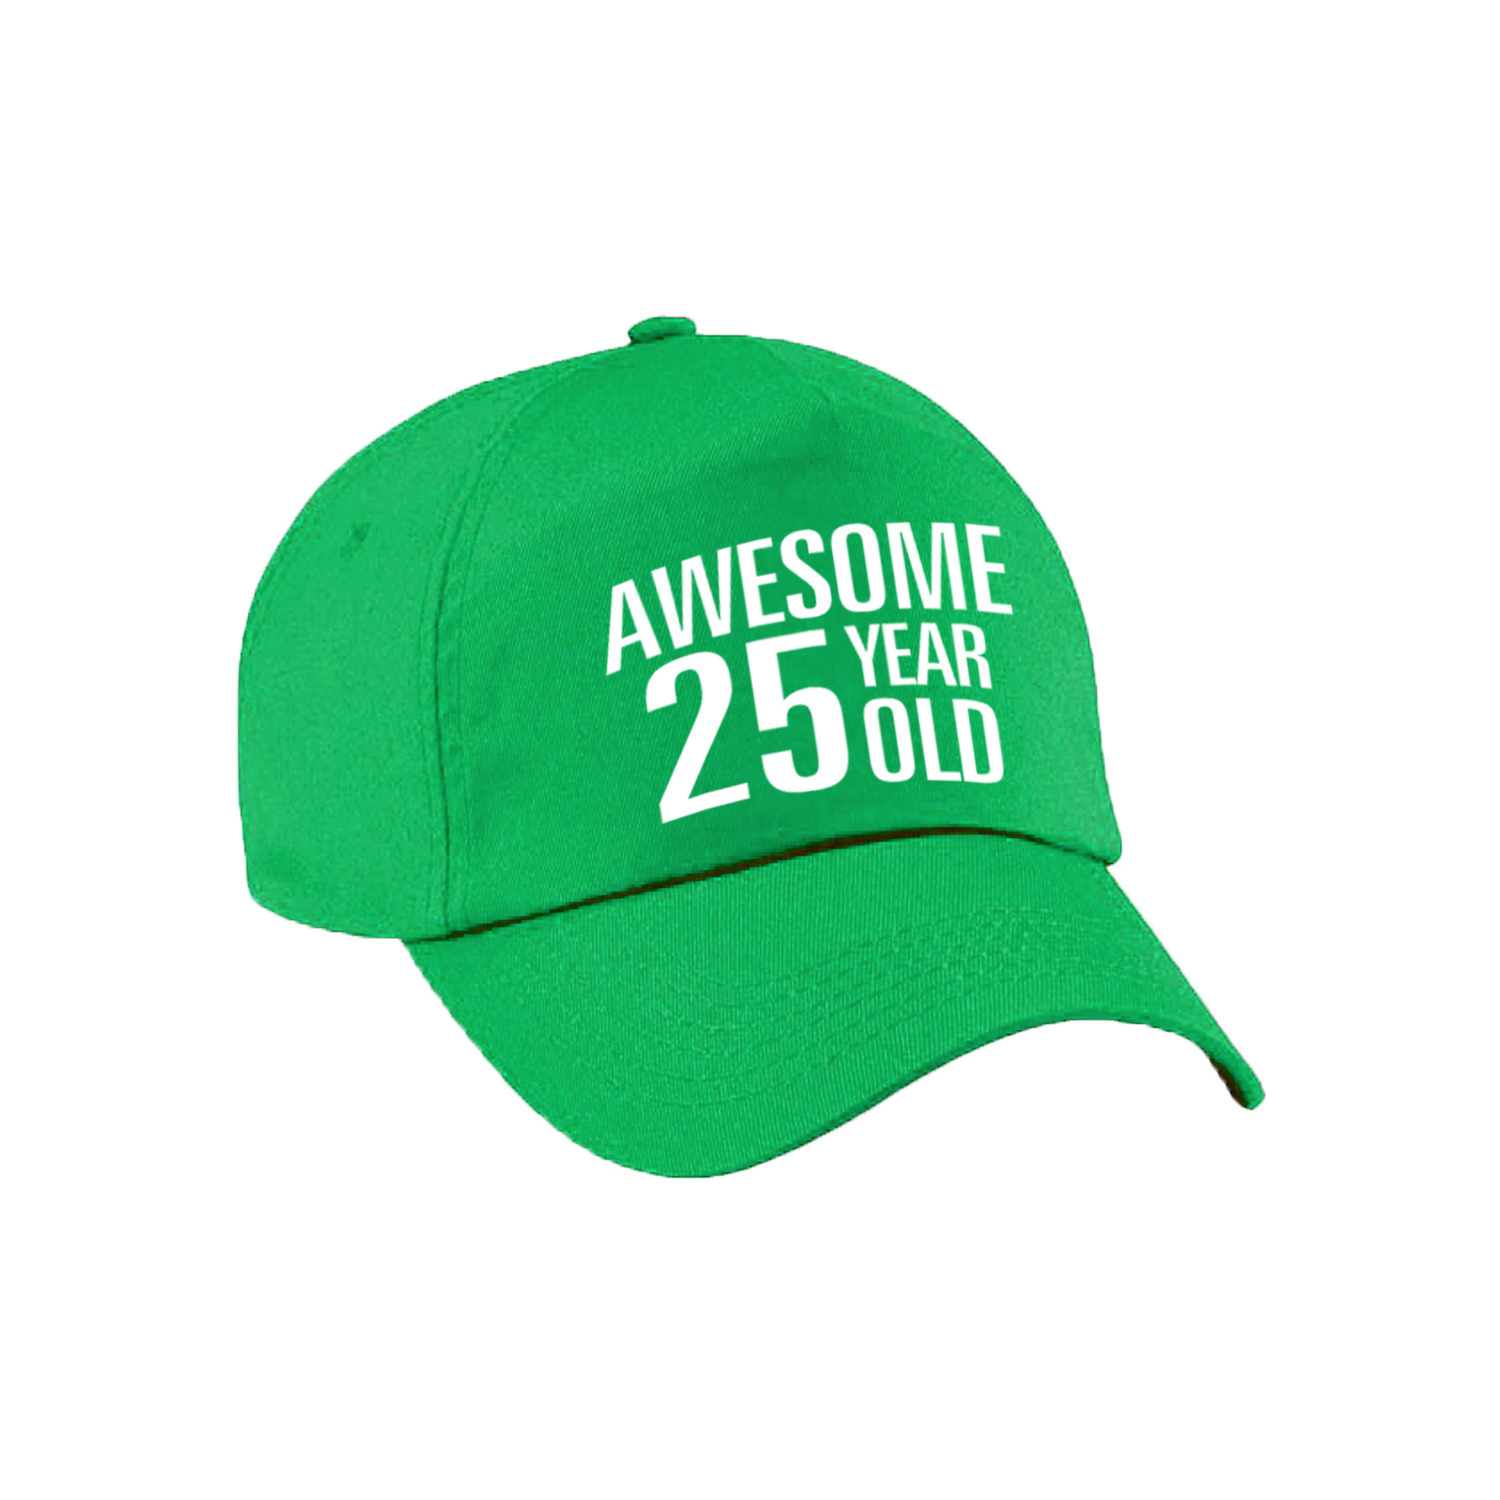 Awesome 25 year old verjaardag pet / cap groen voor dames en heren